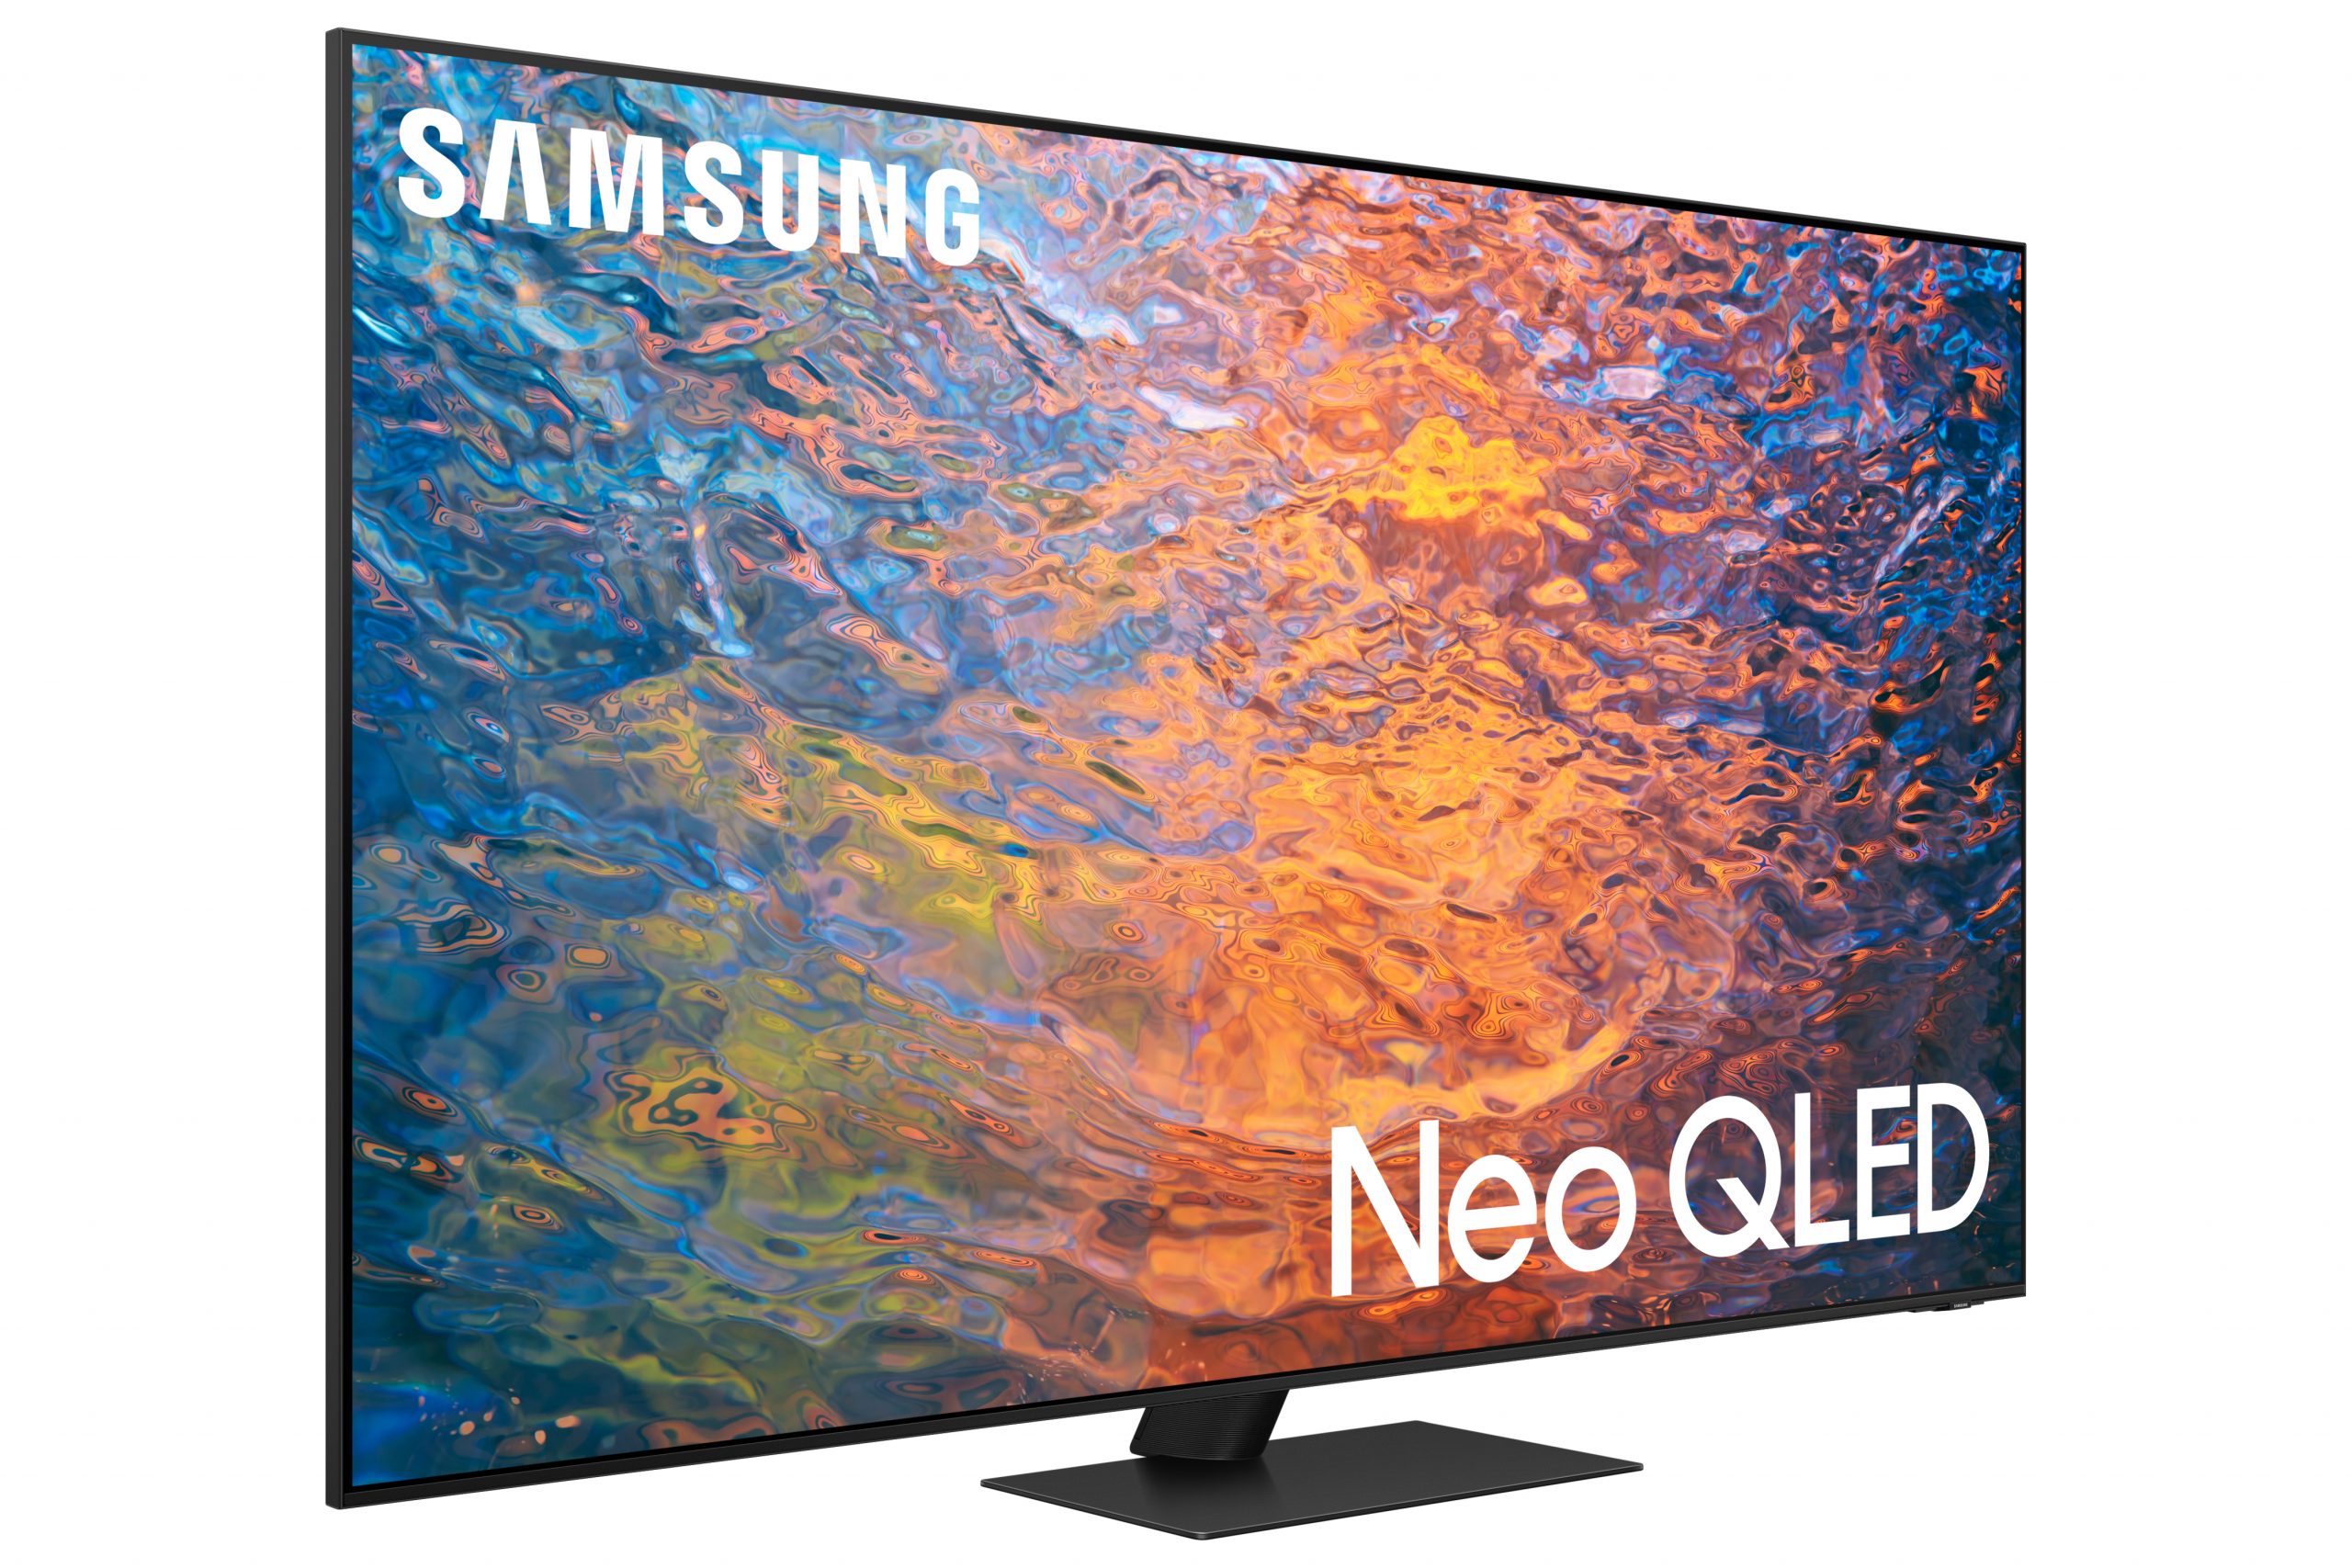 Telewizory Samsung Neo QLED 4K trafiają do sprzedaży od 1200 dolarów